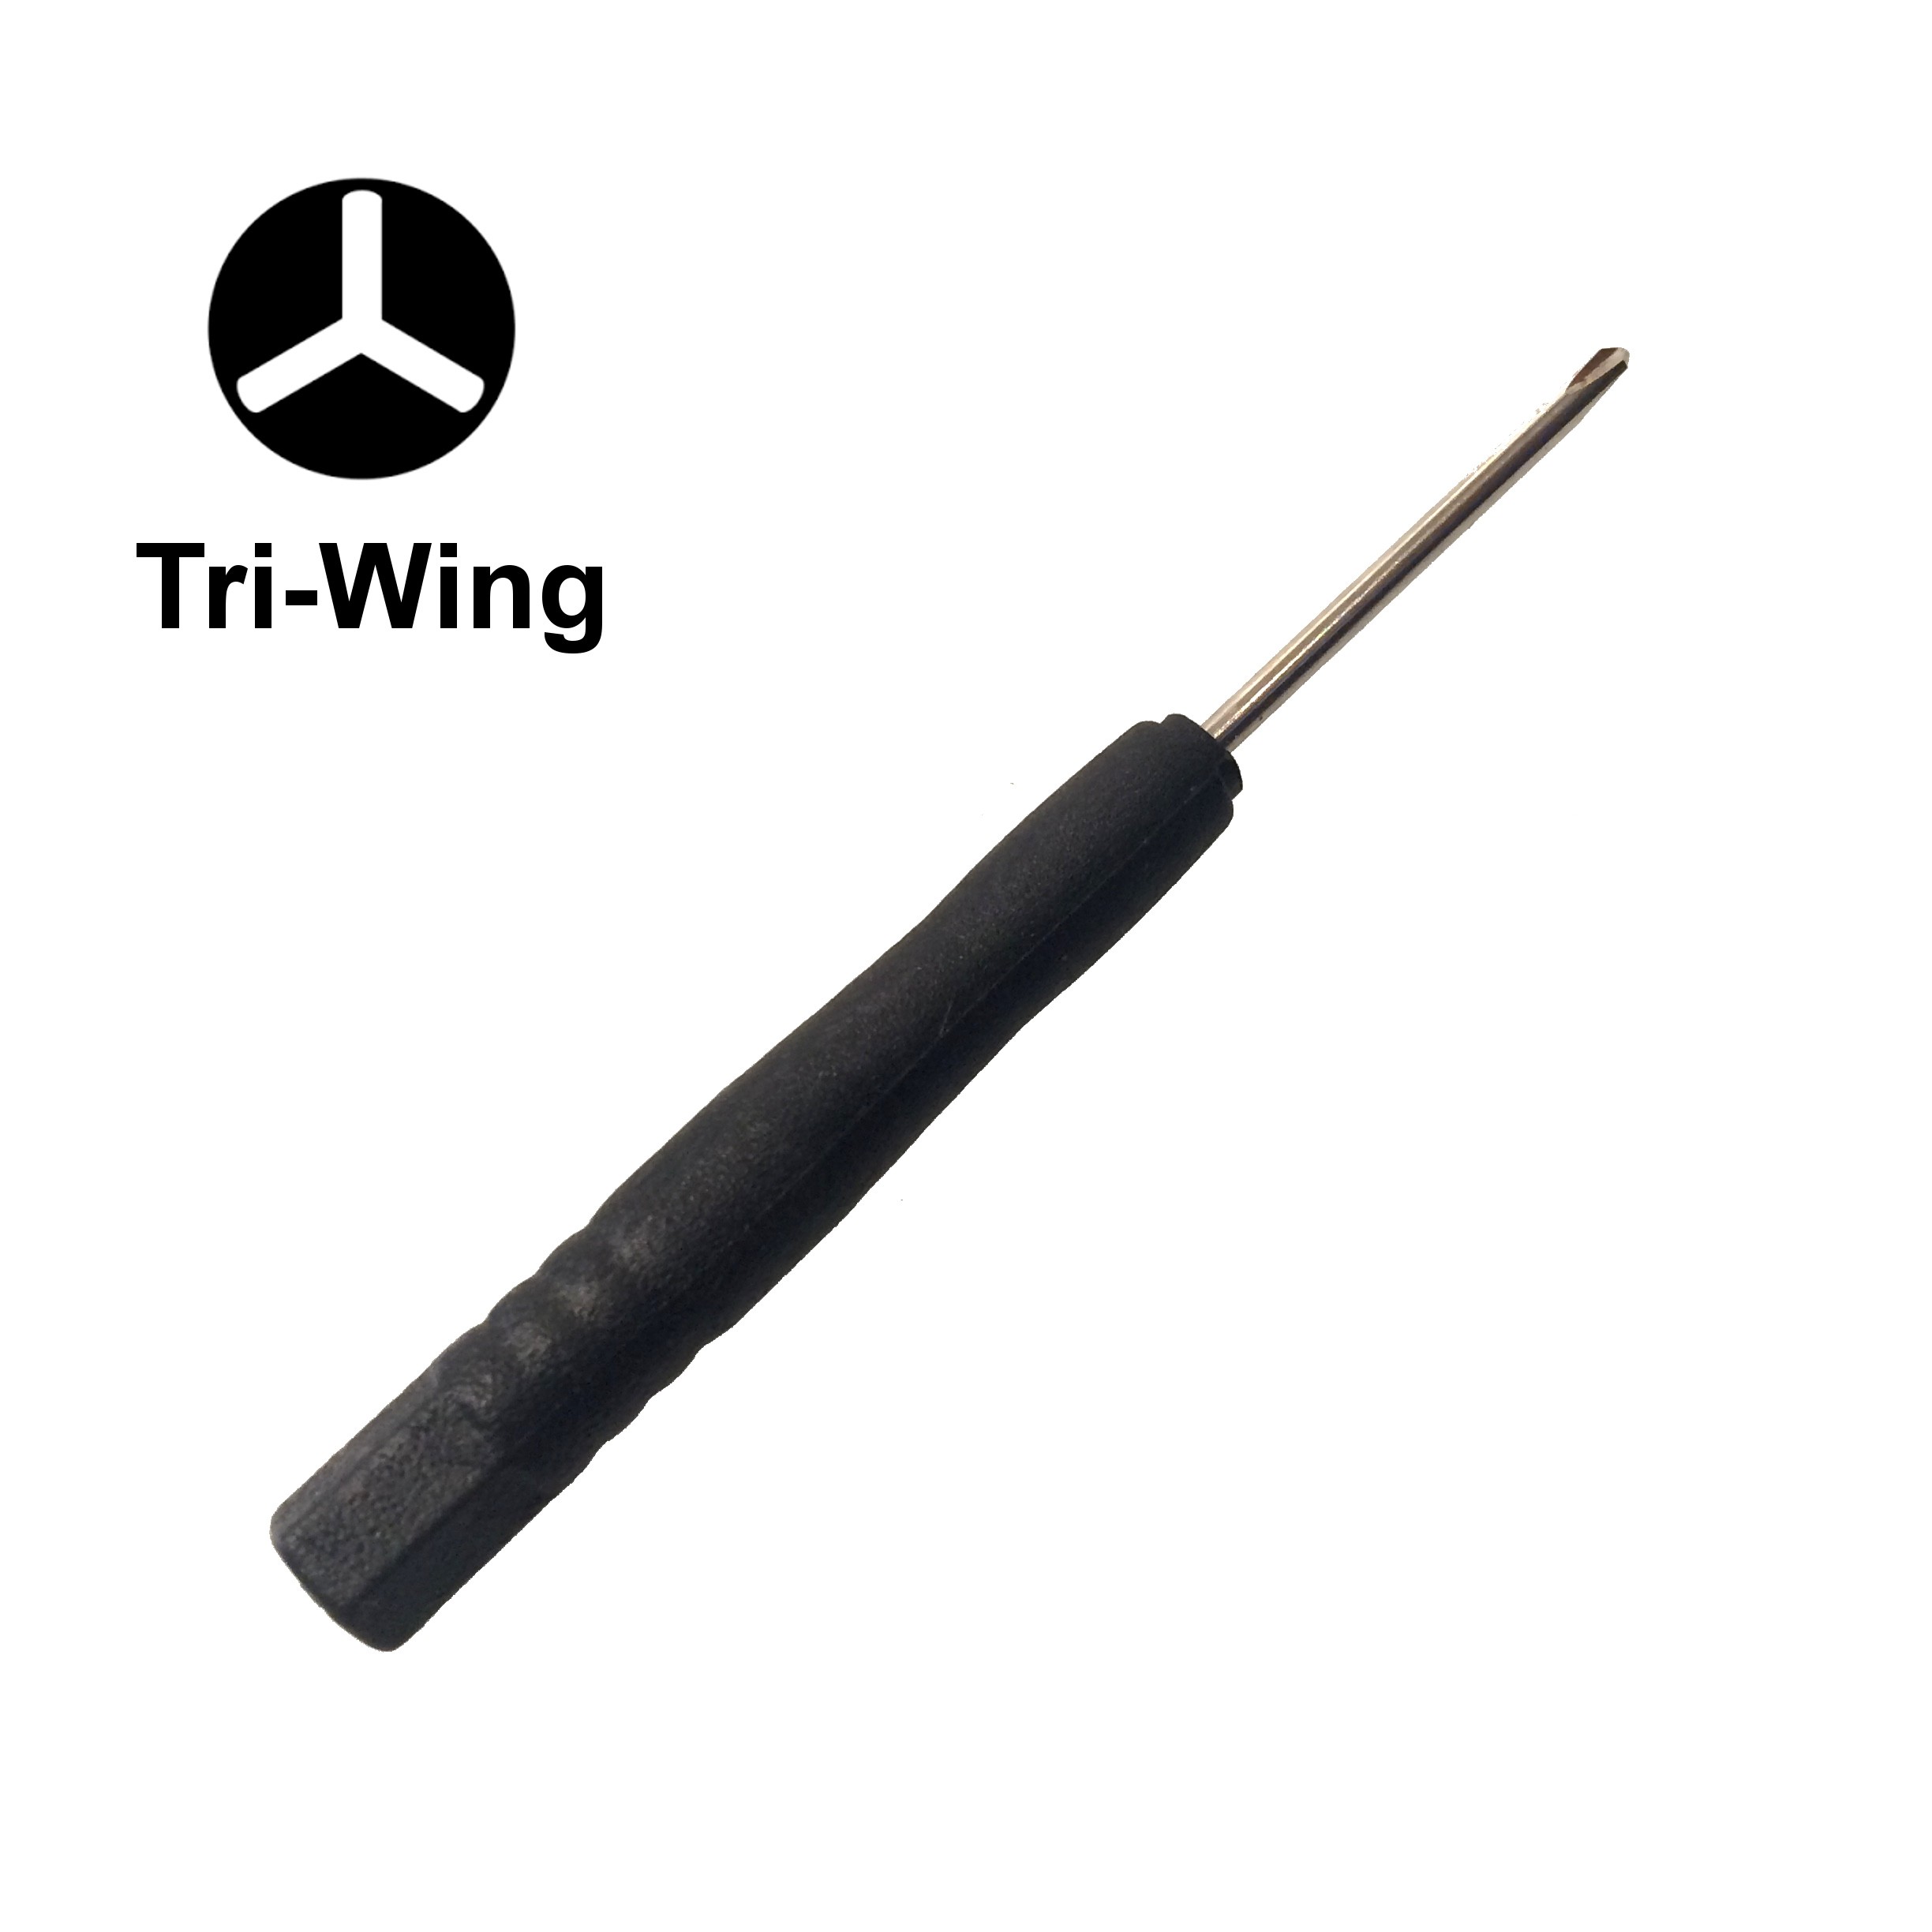 tri wing screwdriver